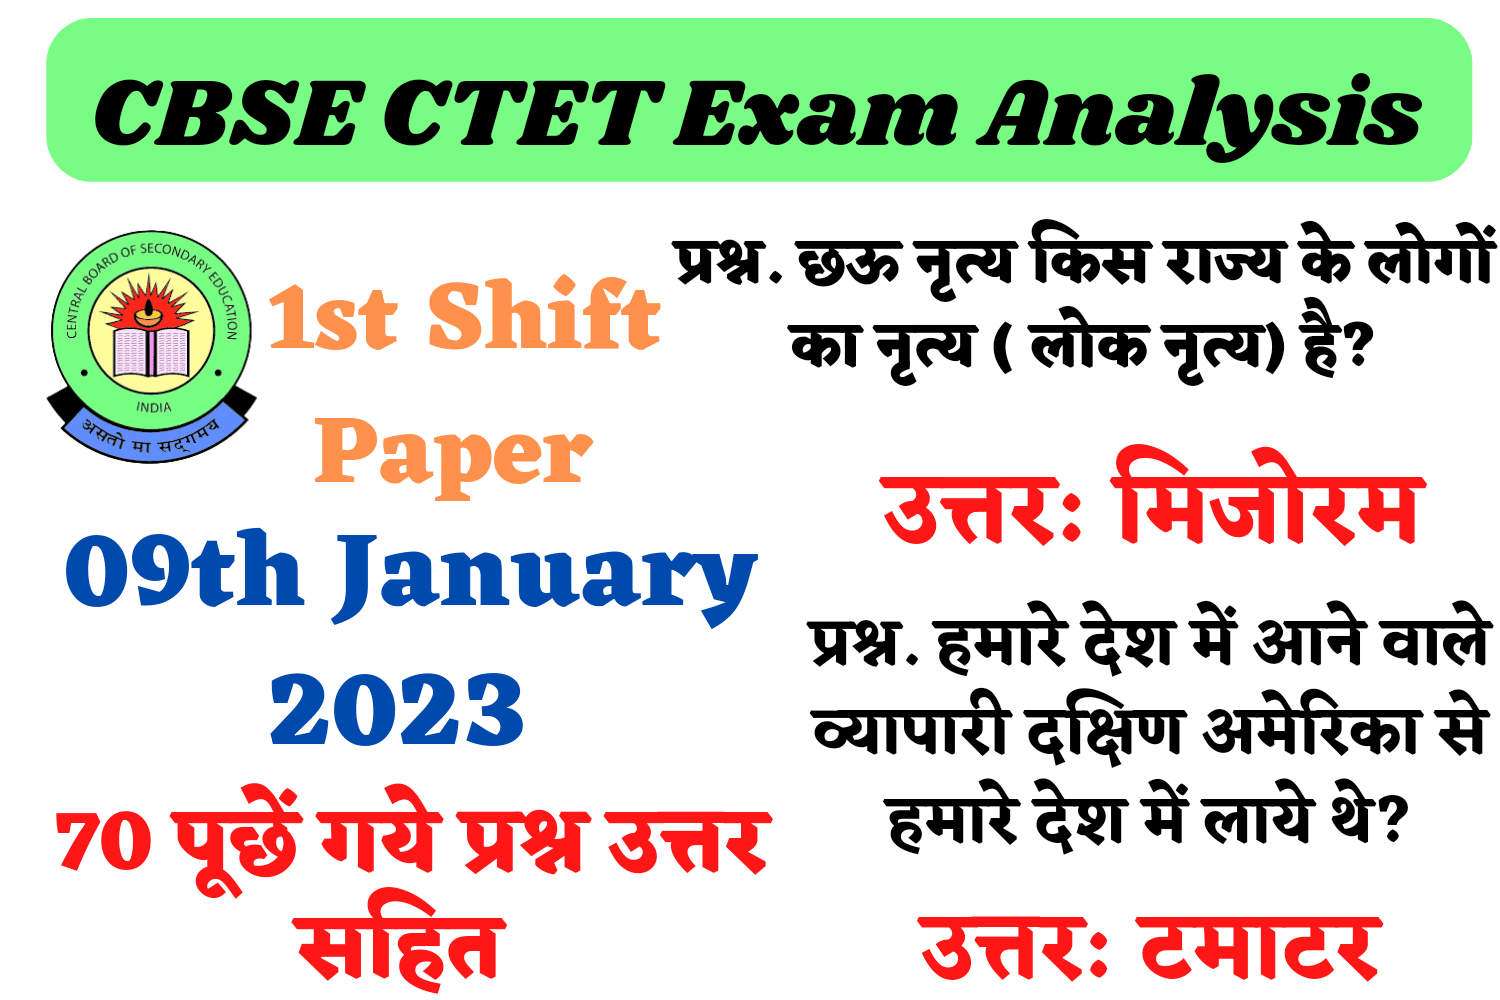 CBSE CTET 09th January 1st Shift Exam Analysis | सीटेट परीक्षा 09 जनवरी की पहली शिफ्ट में पूछे गए प्रश्न और उत्तर